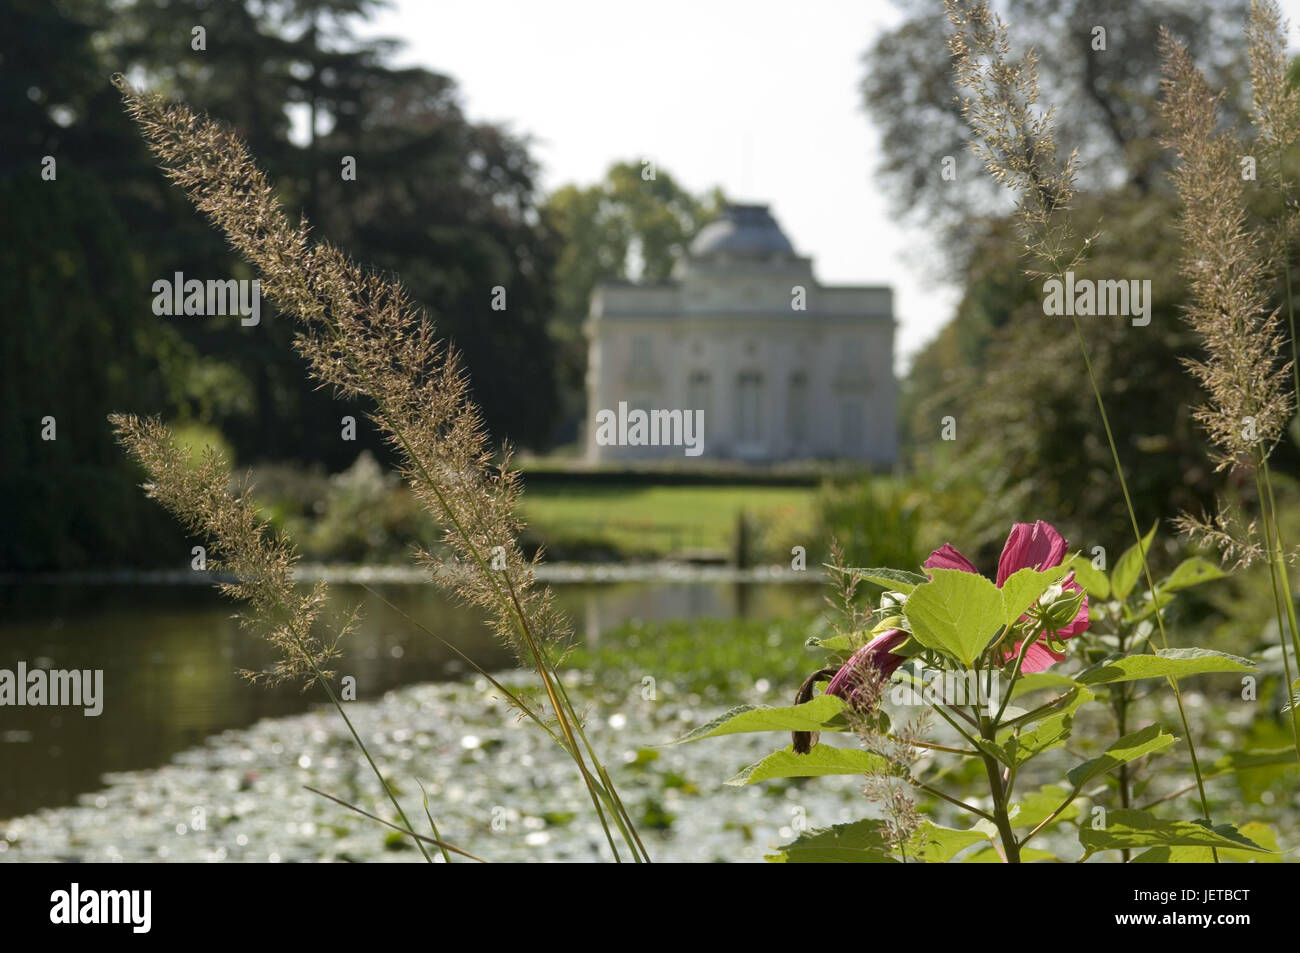 France, Paris, Bois de Boulogne, Parc de trifle, lock, pond, grass, flower, blur, Stock Photo